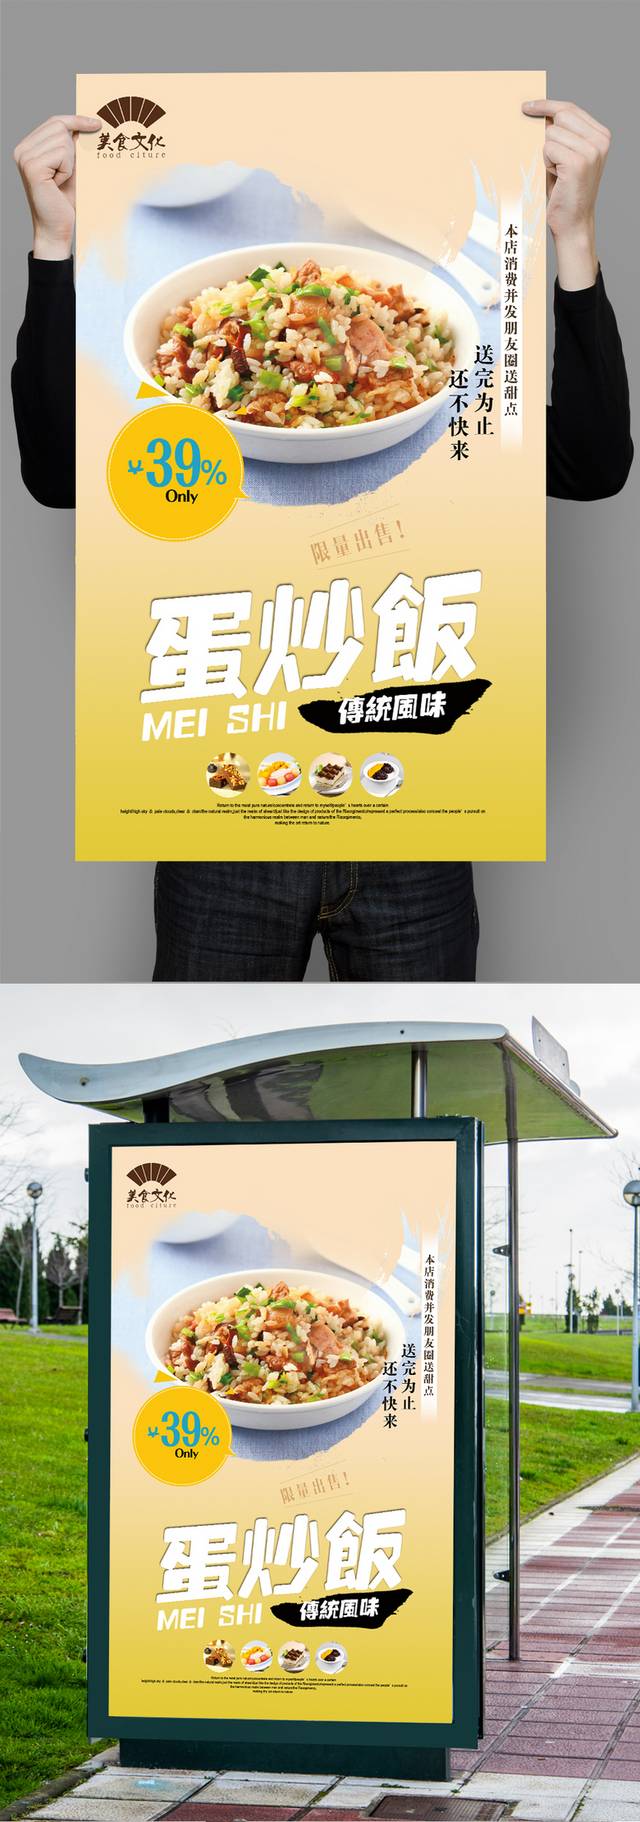 简约炒饭宣传海报设计